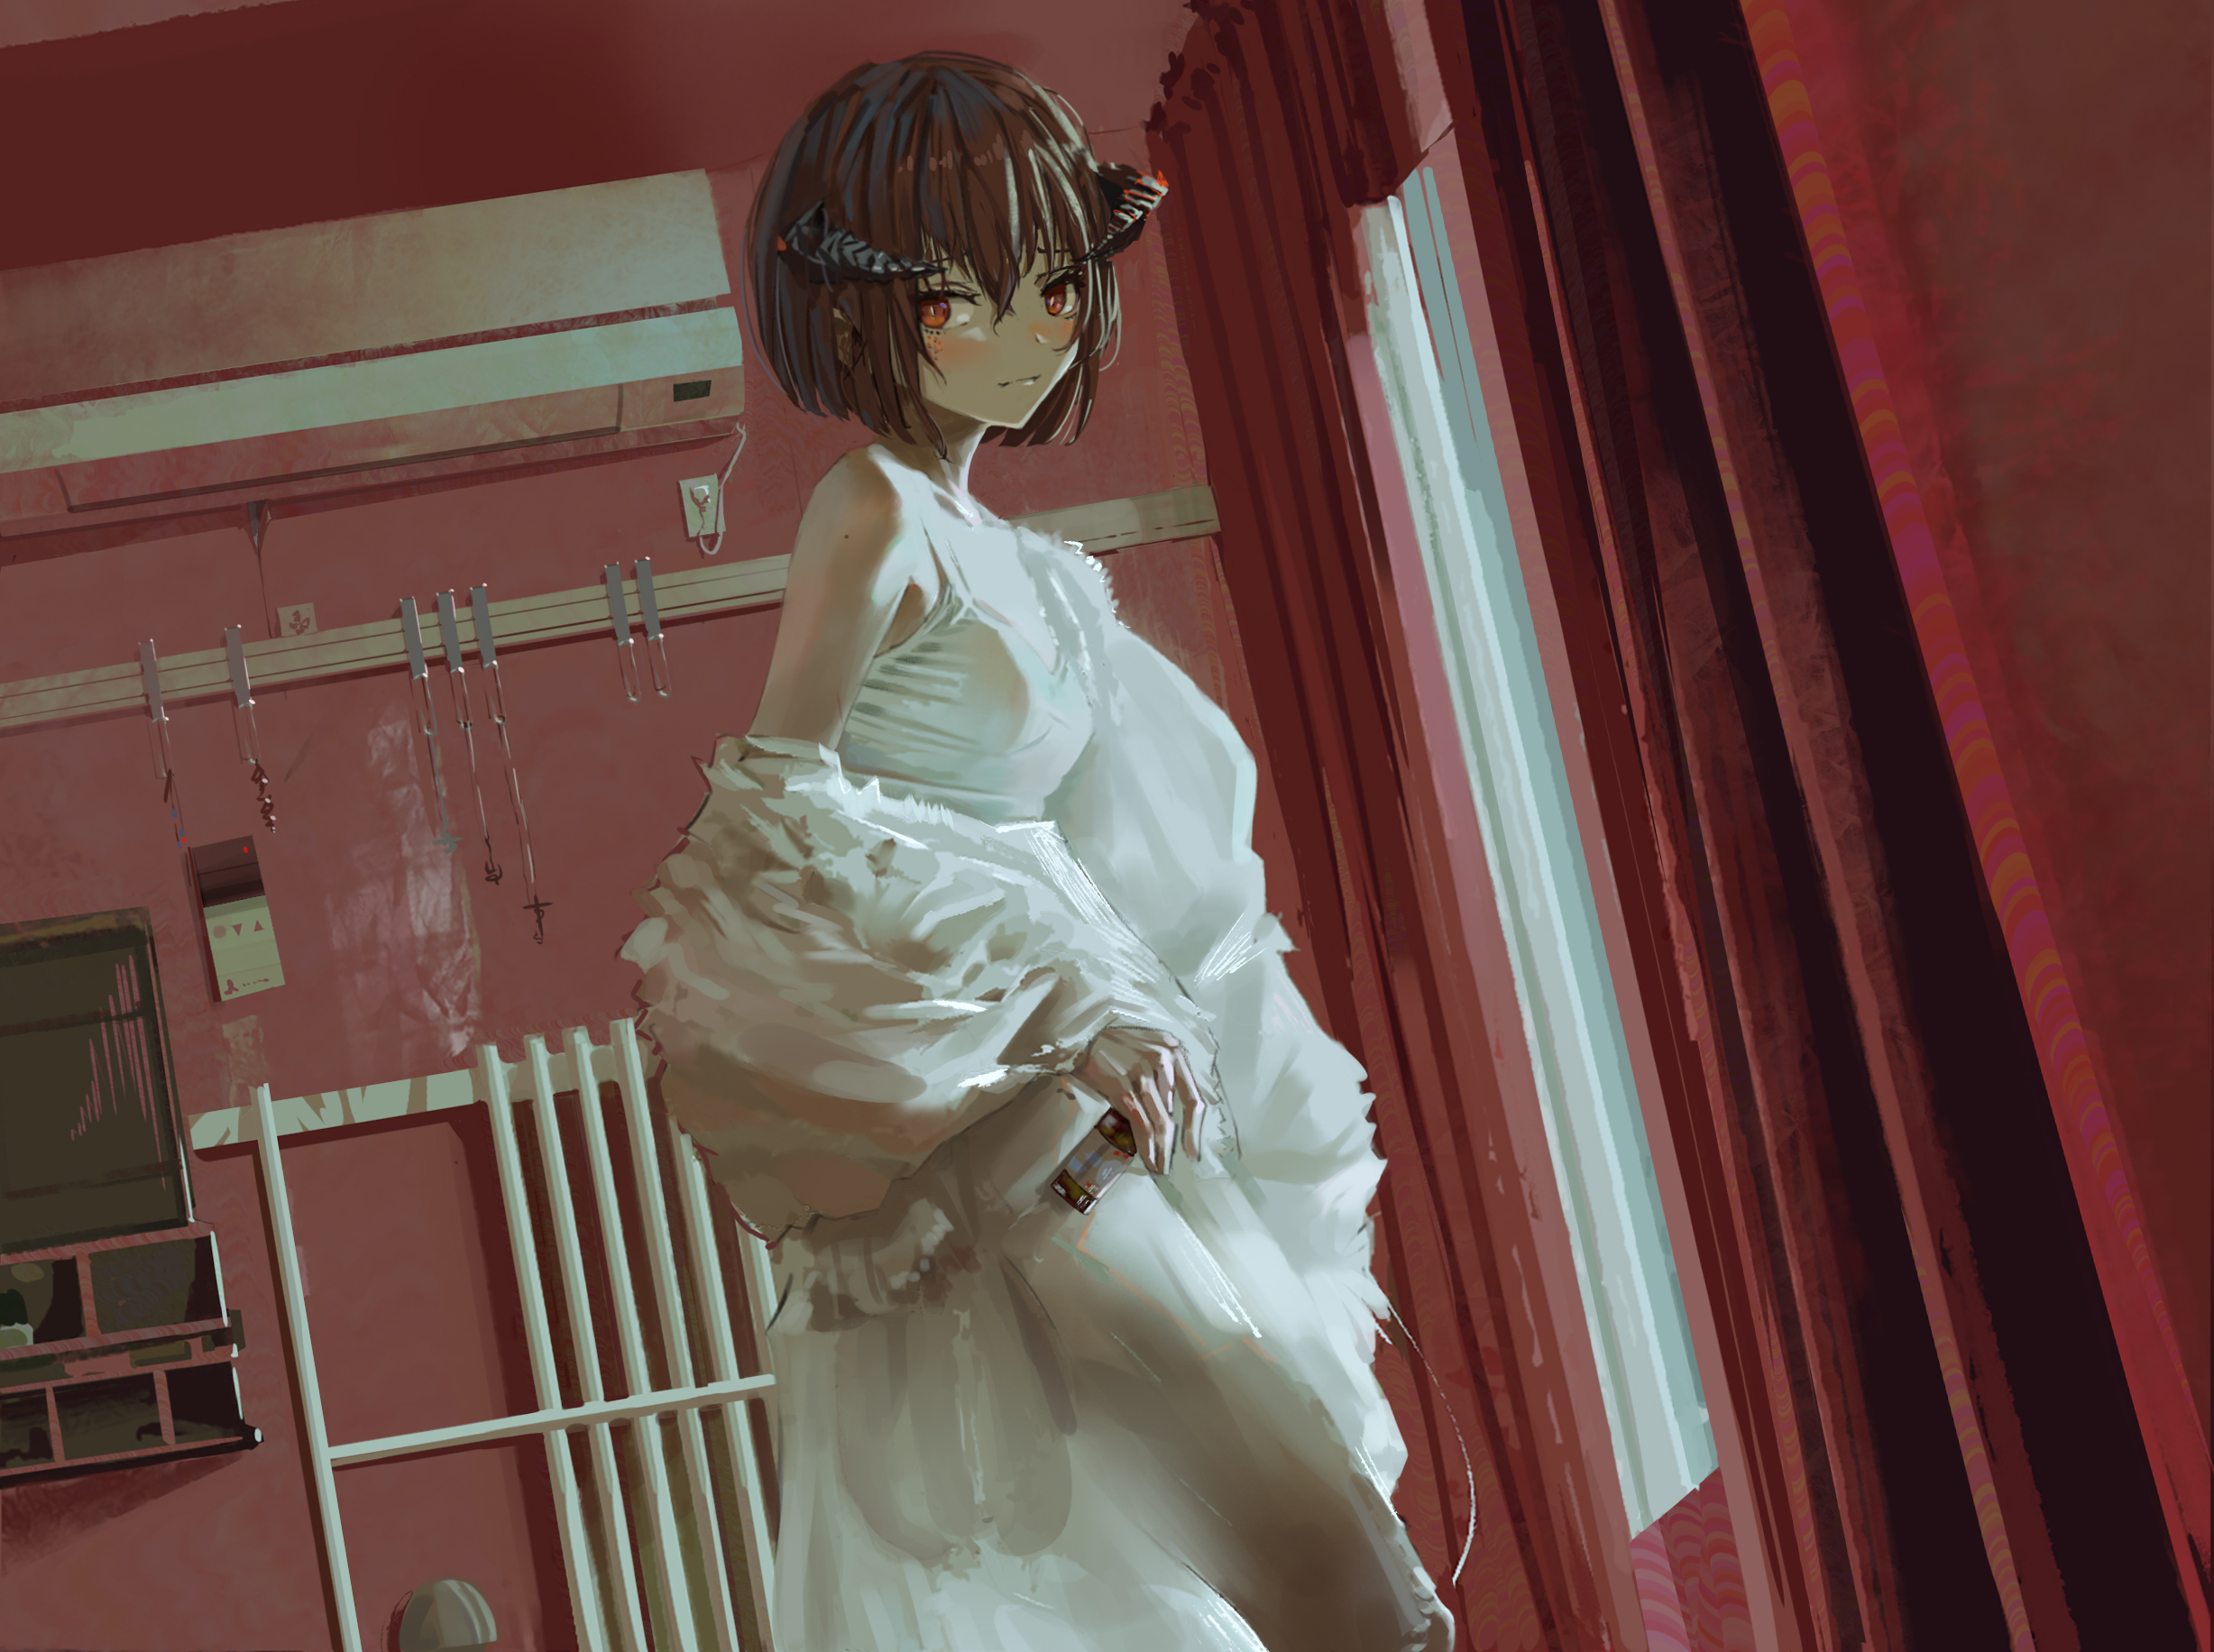 Anime Anime Girls 2D Original Characters Horns White Dress Blushing Short Hair Brunette Dutch Tilt L 2455x1832